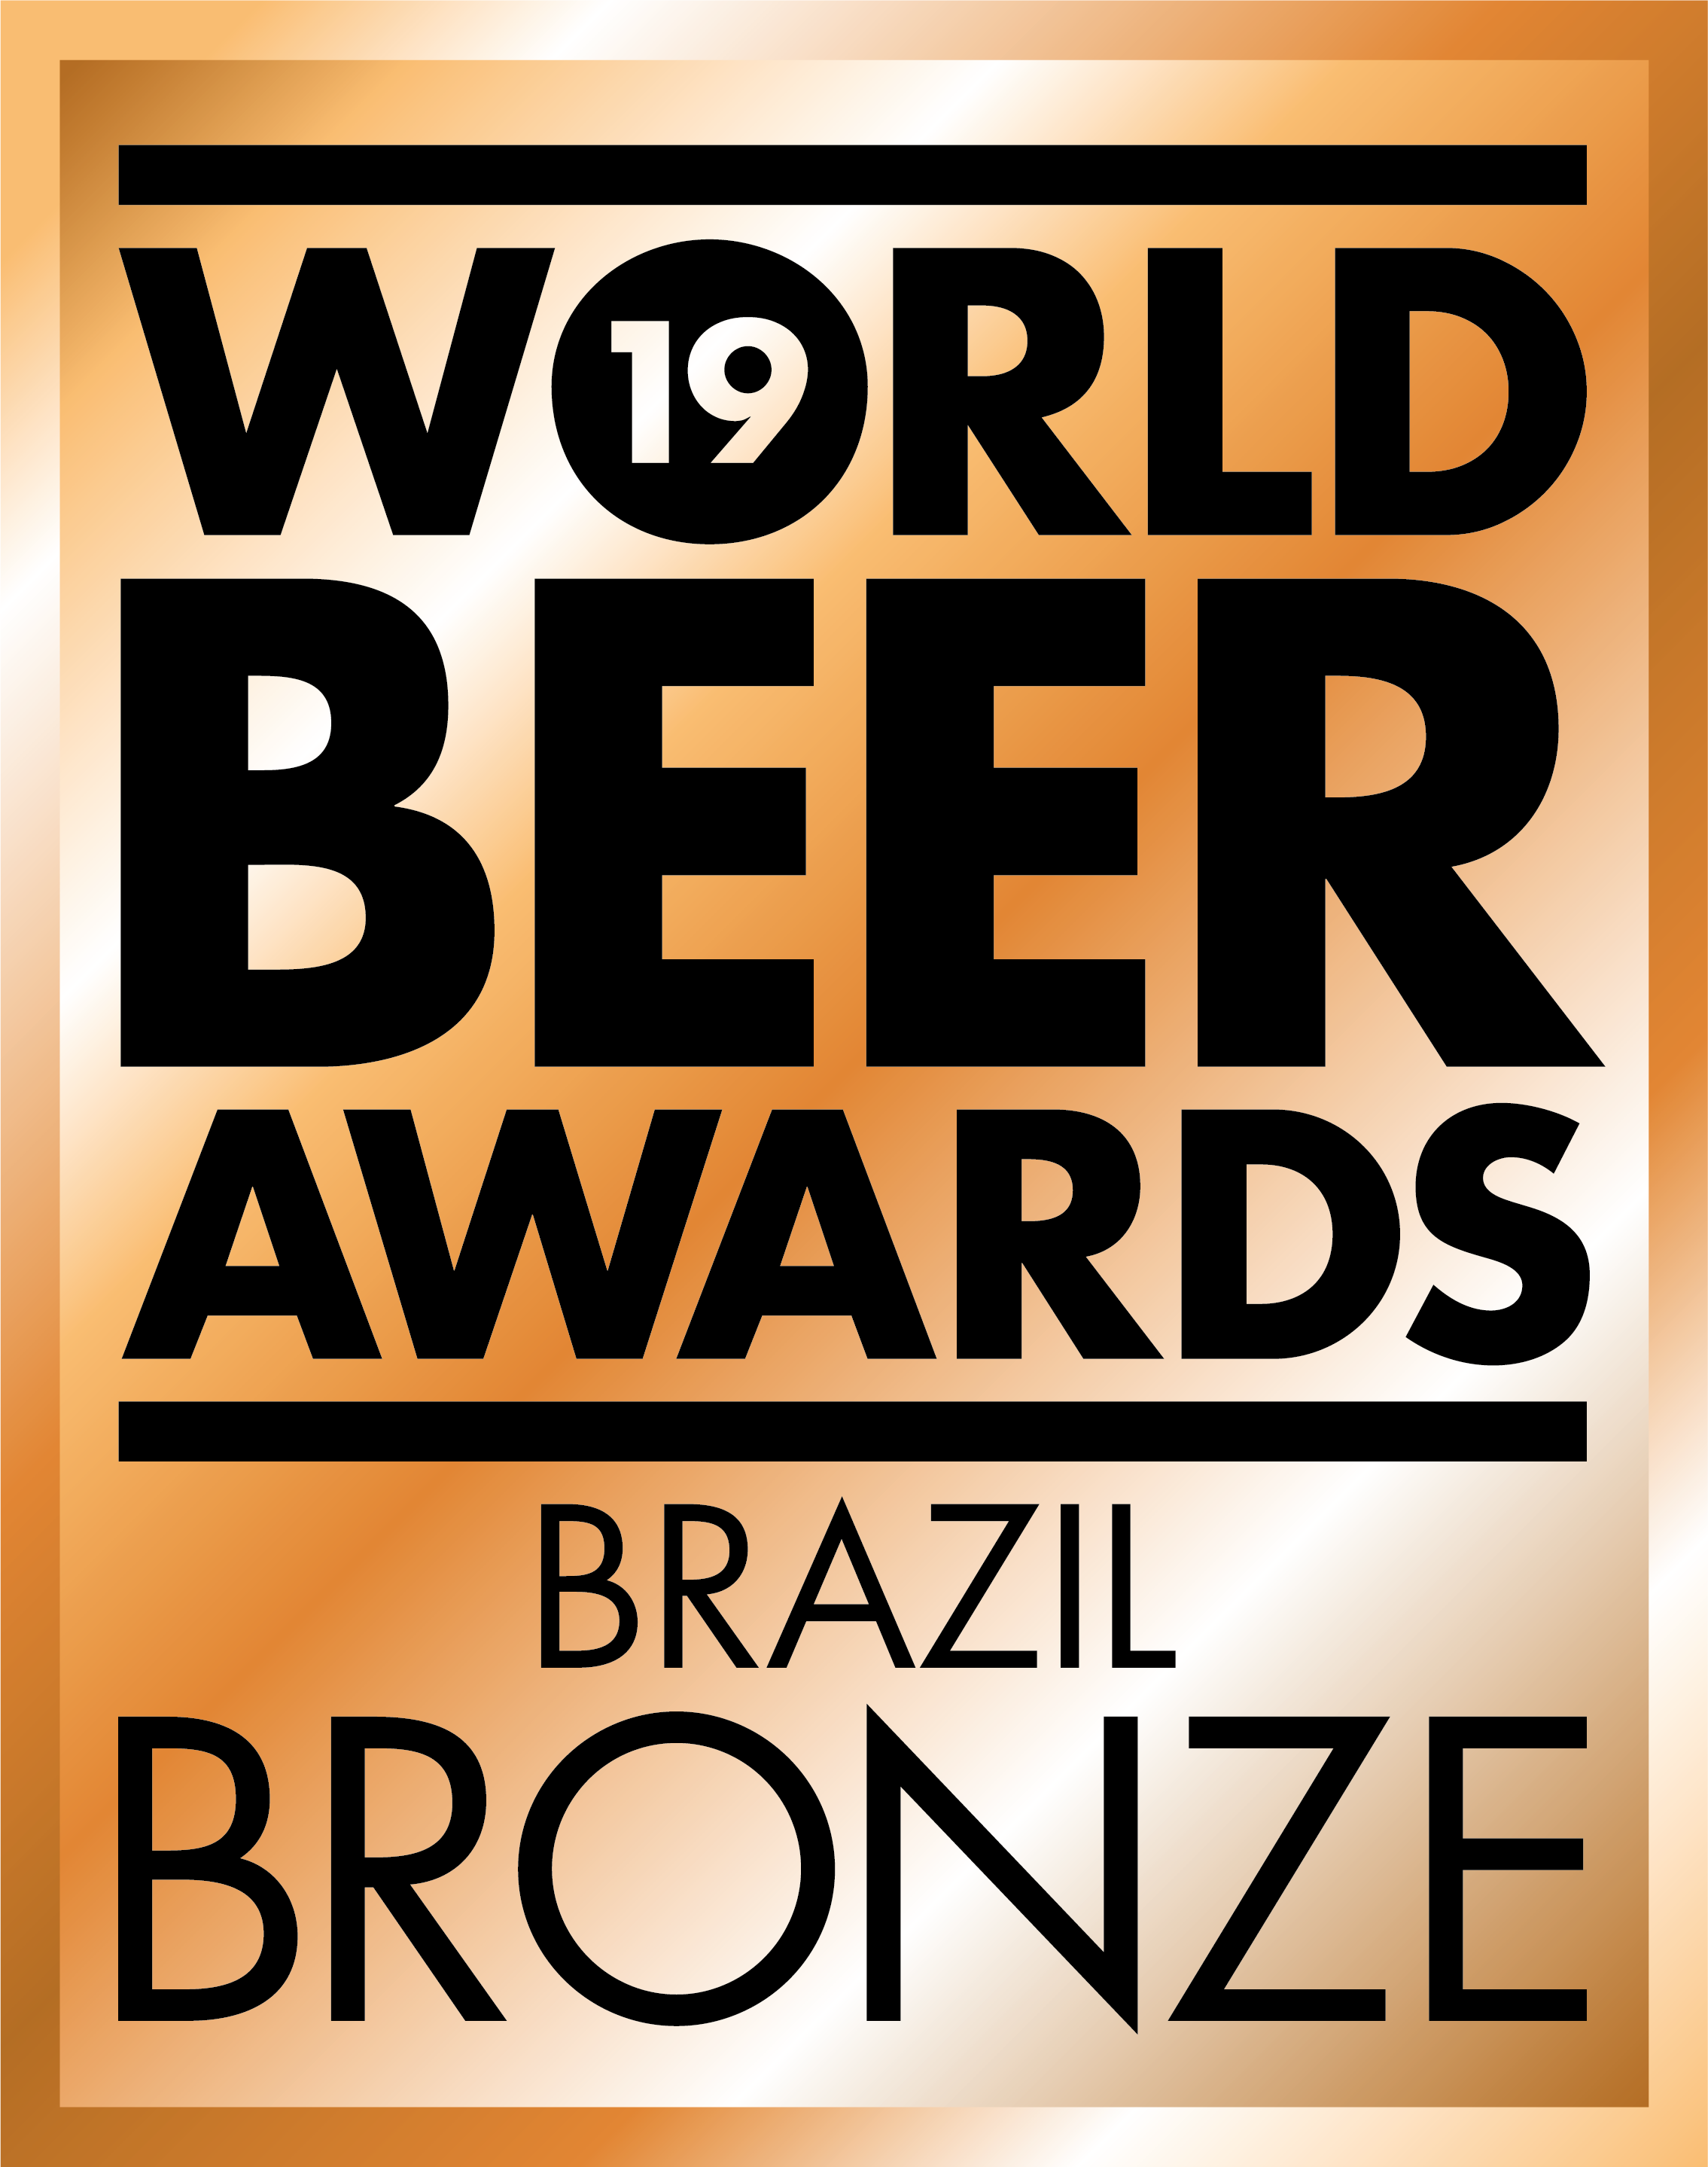 World Beer Awards 2019 - BRONZE